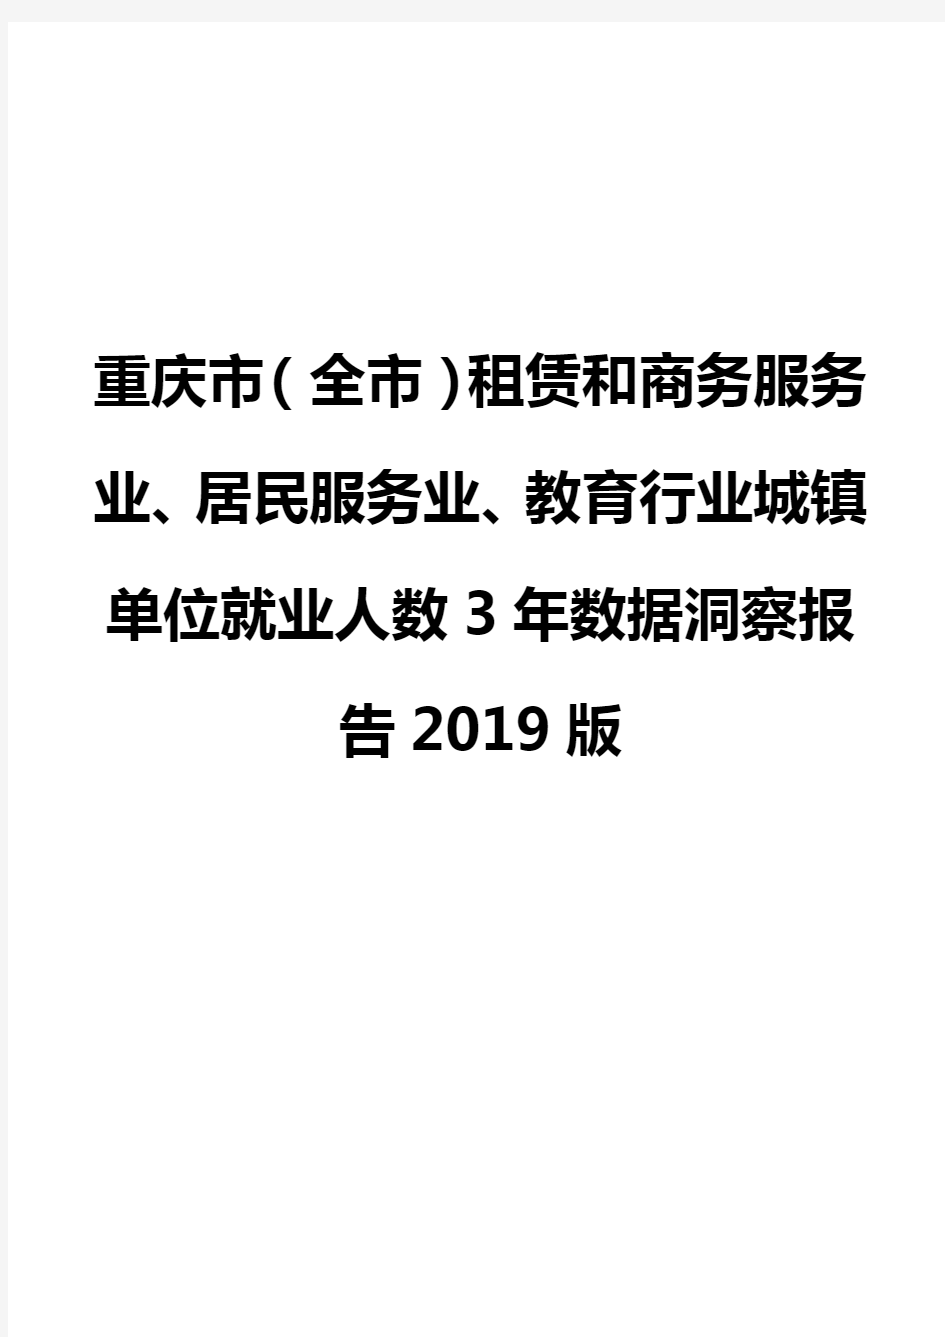 重庆市(全市)租赁和商务服务业、居民服务业、教育行业城镇单位就业人数3年数据洞察报告2019版